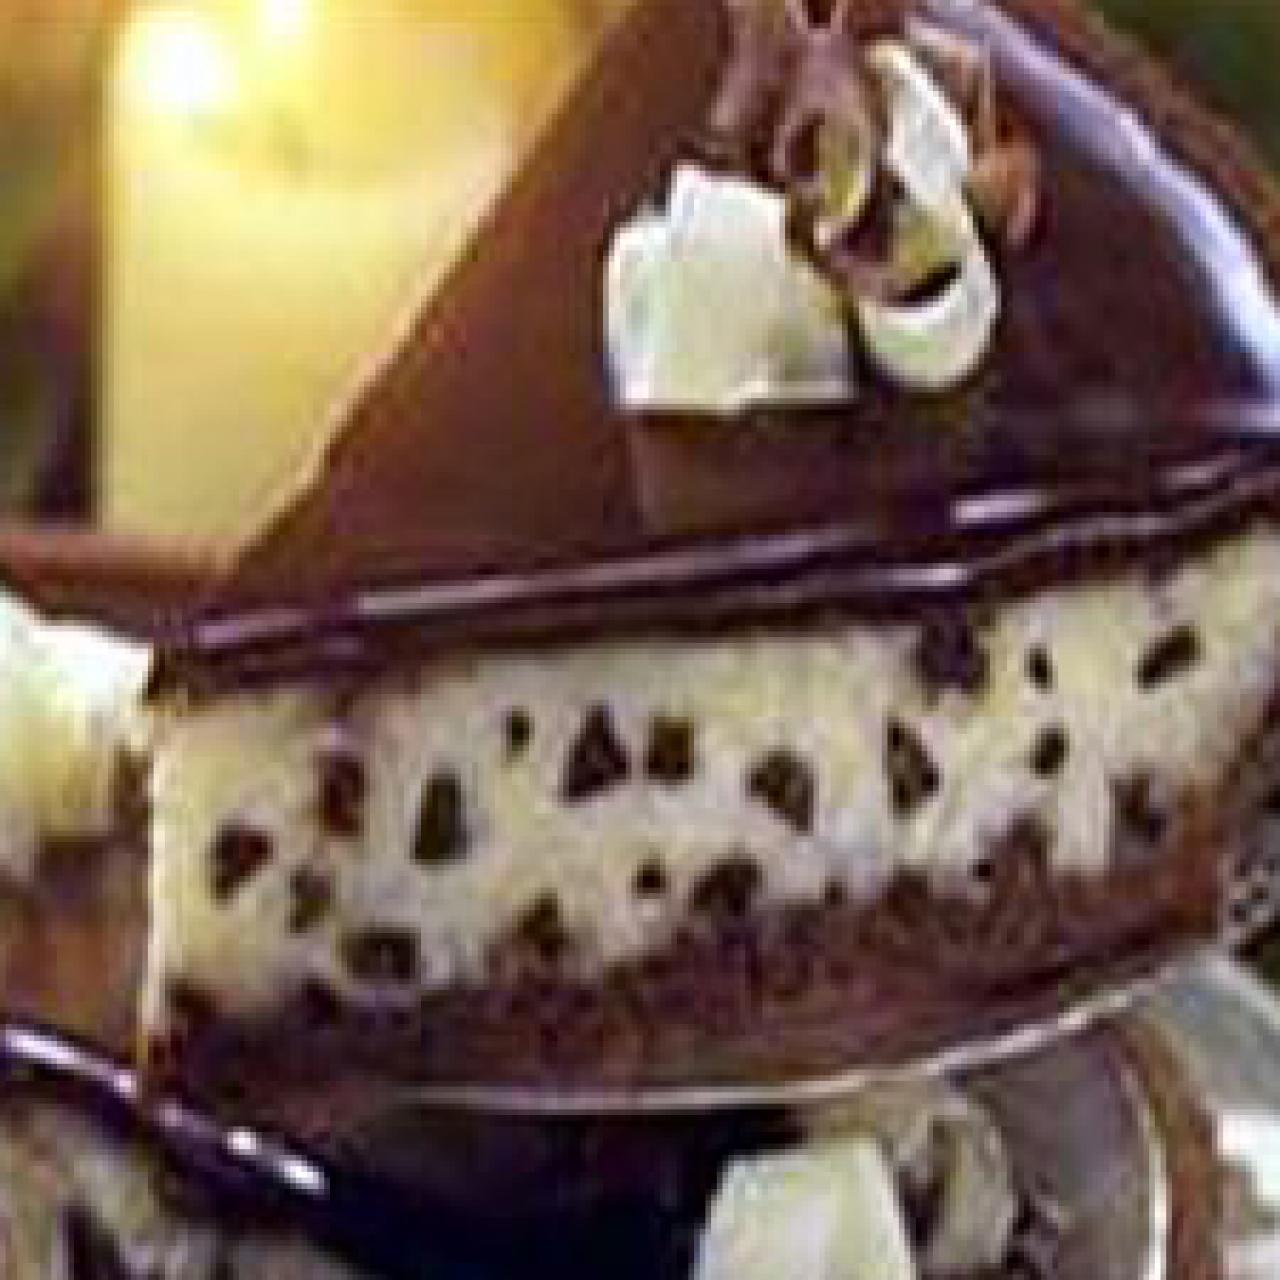 Chocolate Chip Cheesecake